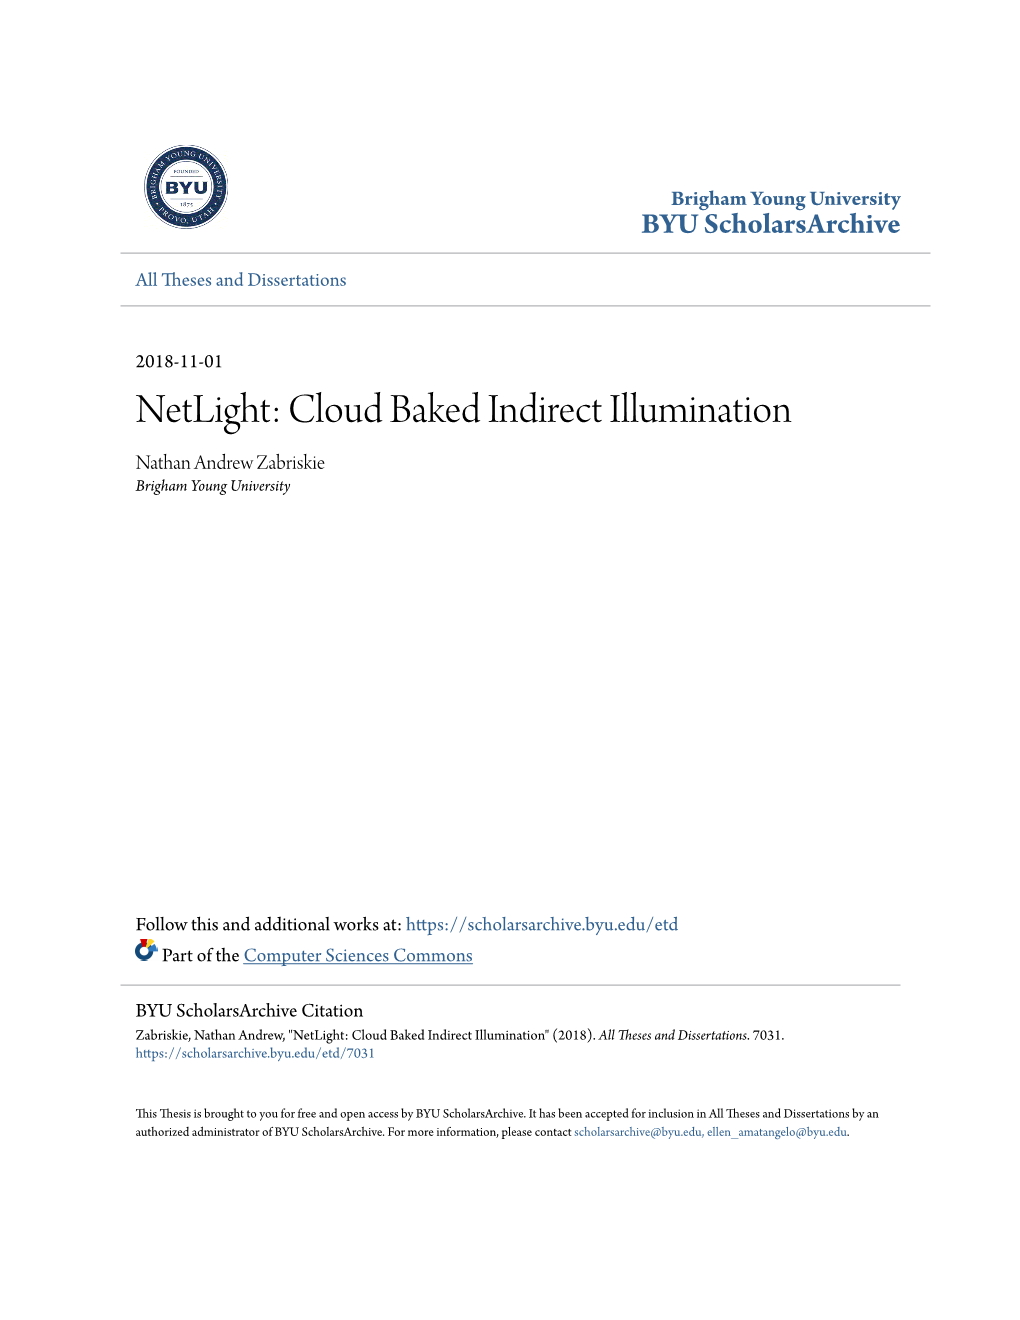 Cloud Baked Indirect Illumination Nathan Andrew Zabriskie Brigham Young University